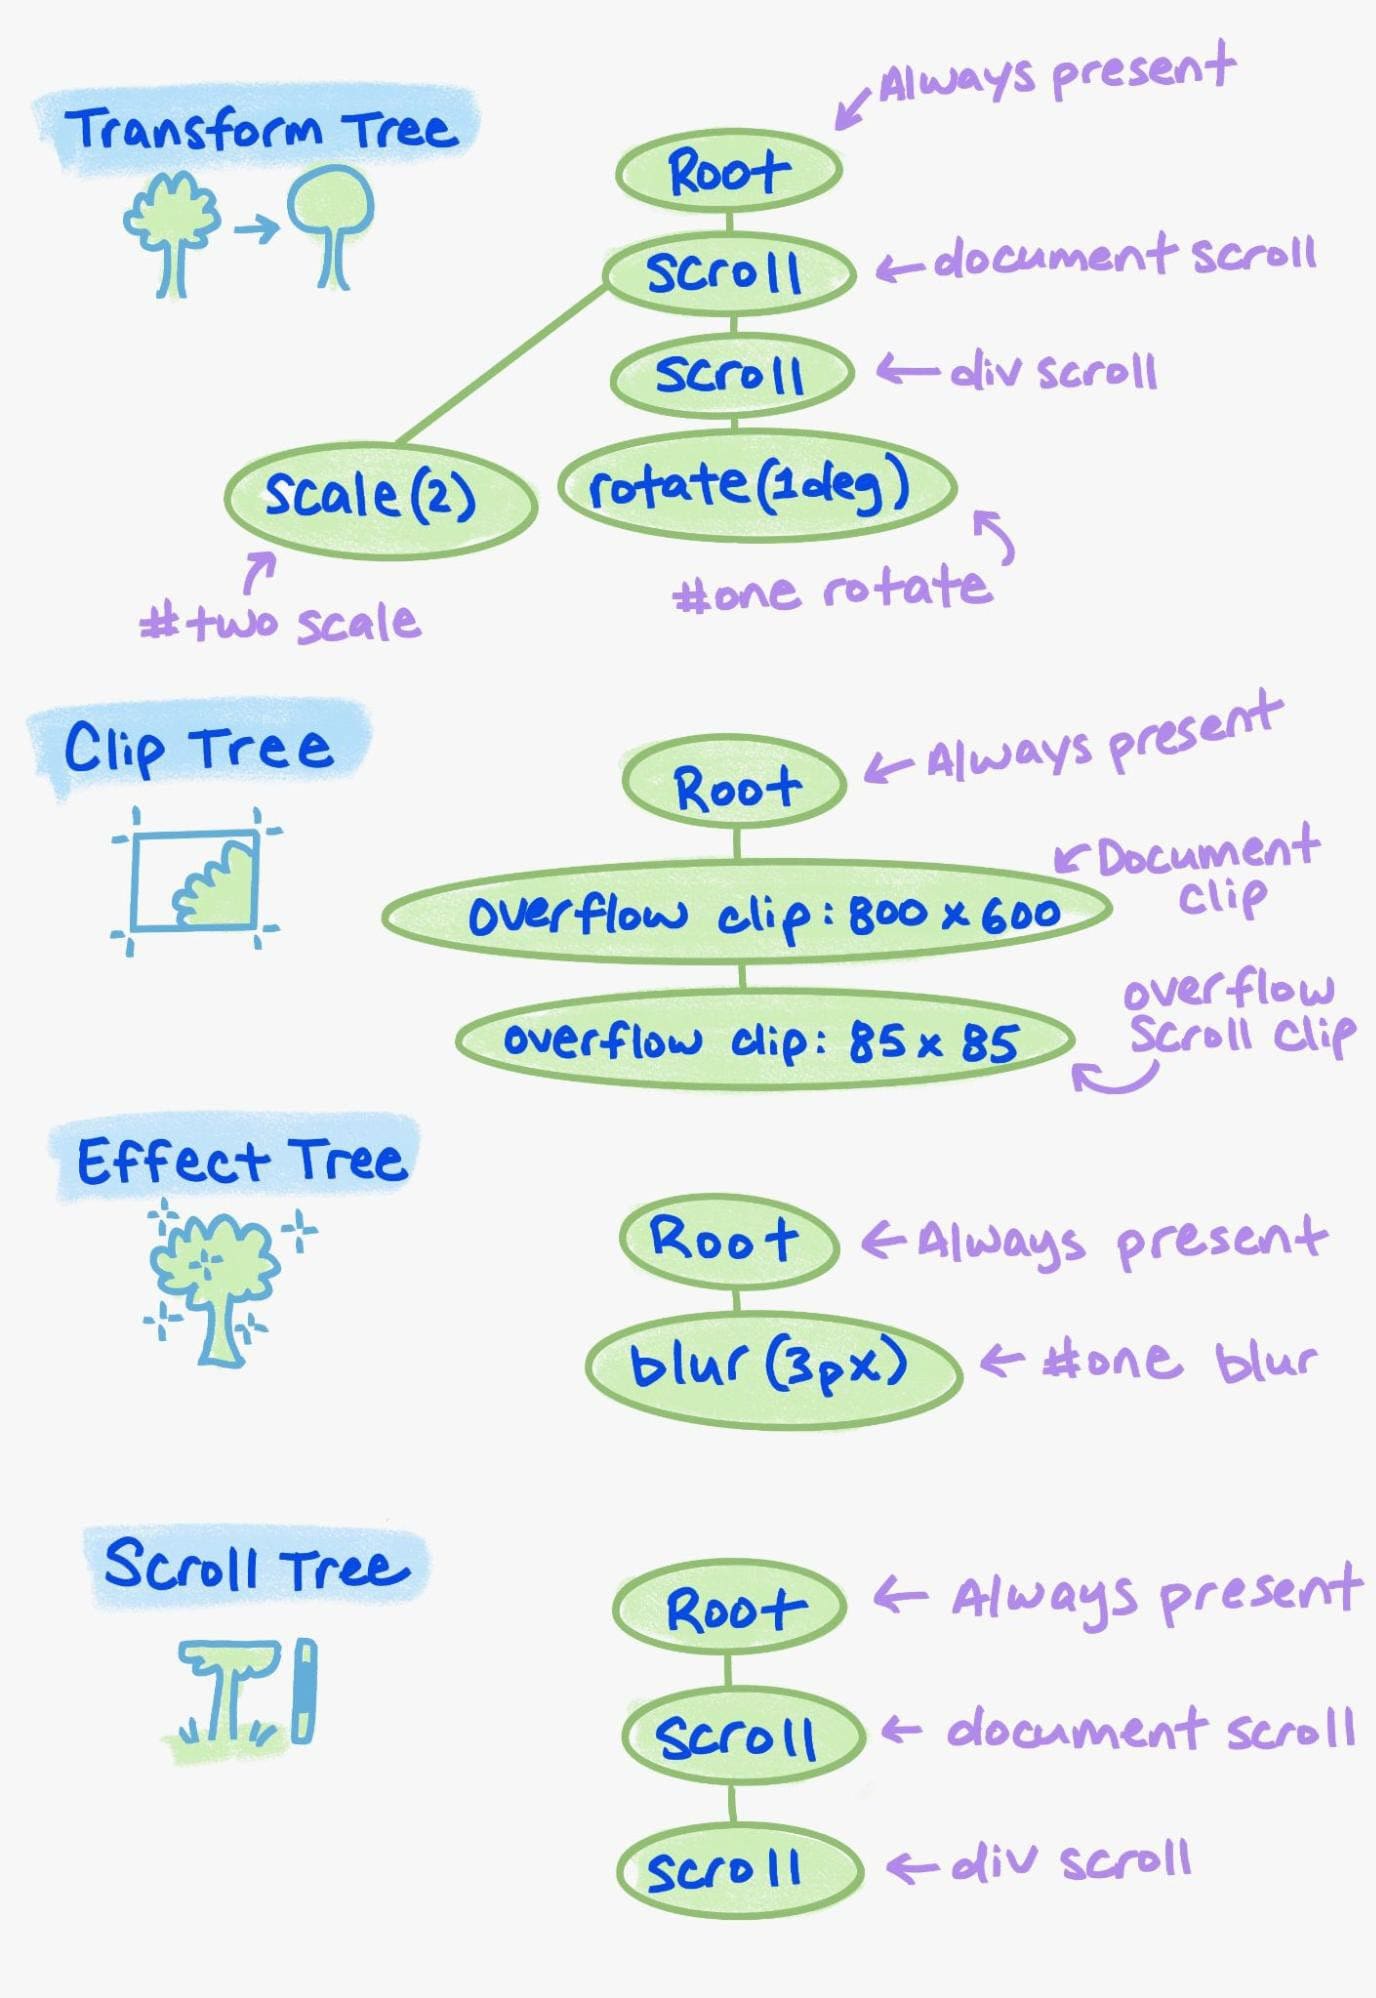 דוגמה לרכיבים השונים בעץ הנכסים.